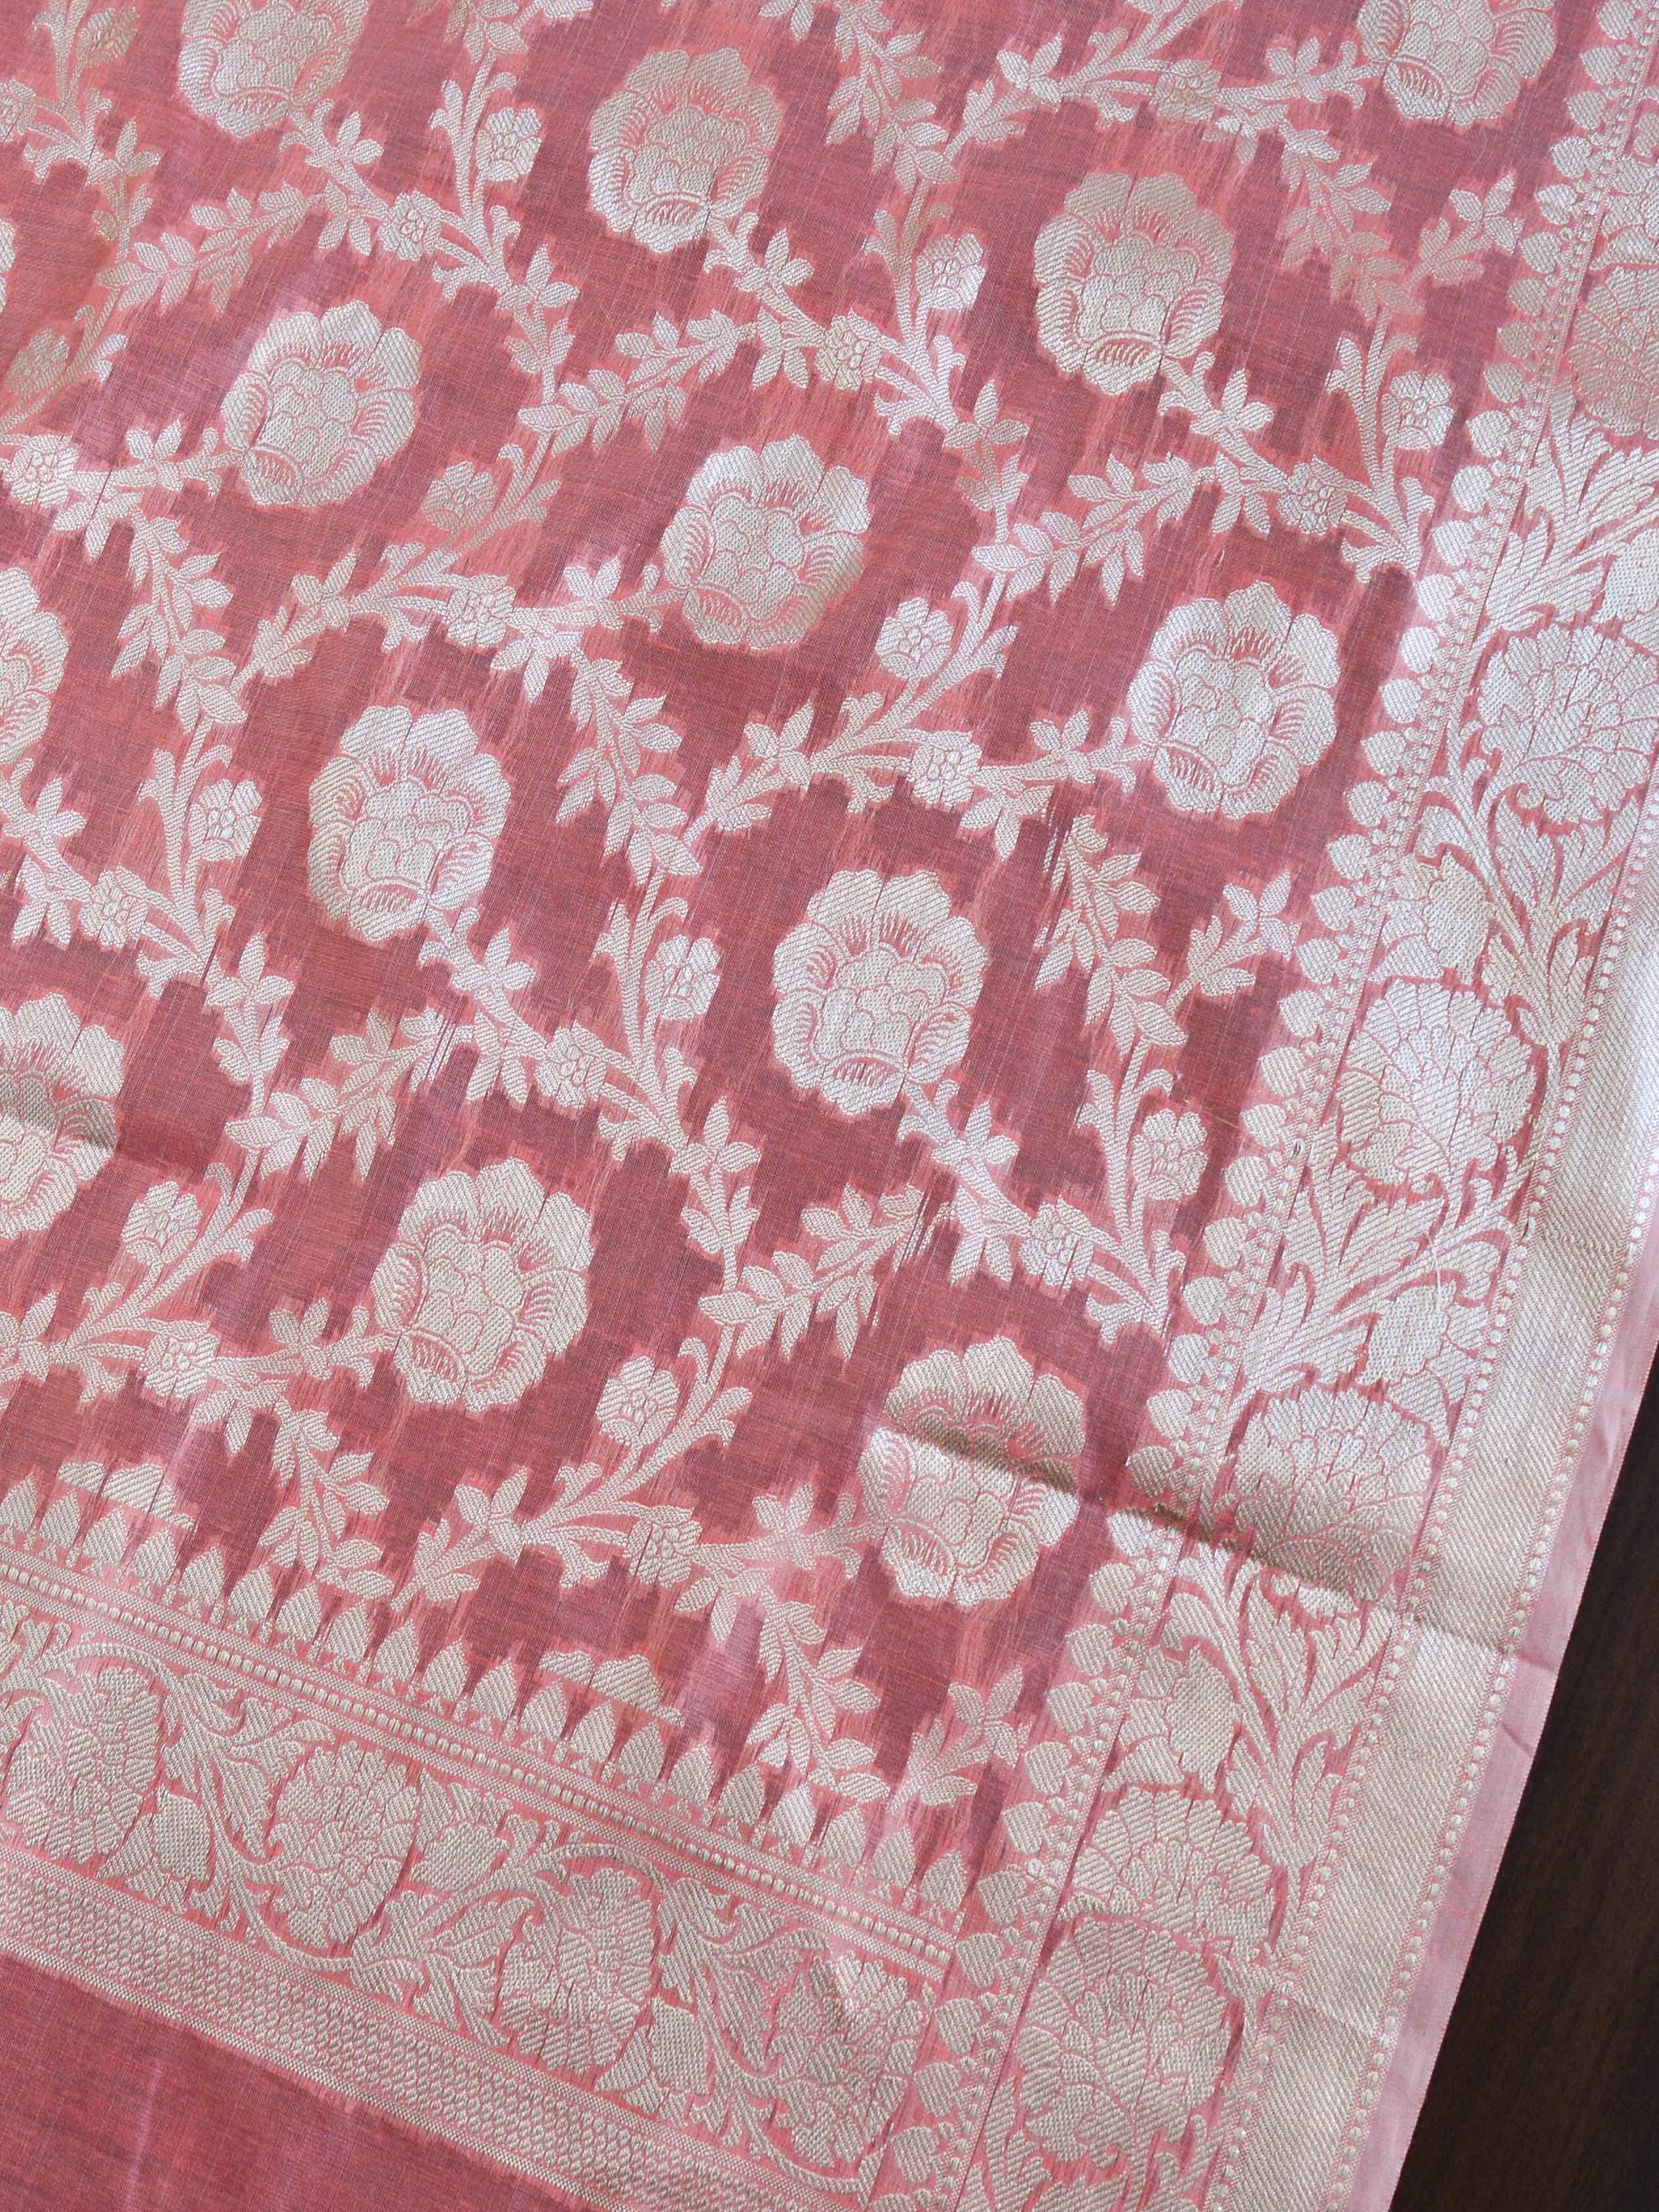 Banarasee Cotton Silk Salwar Kameez Fabric With Zari Work-Peach